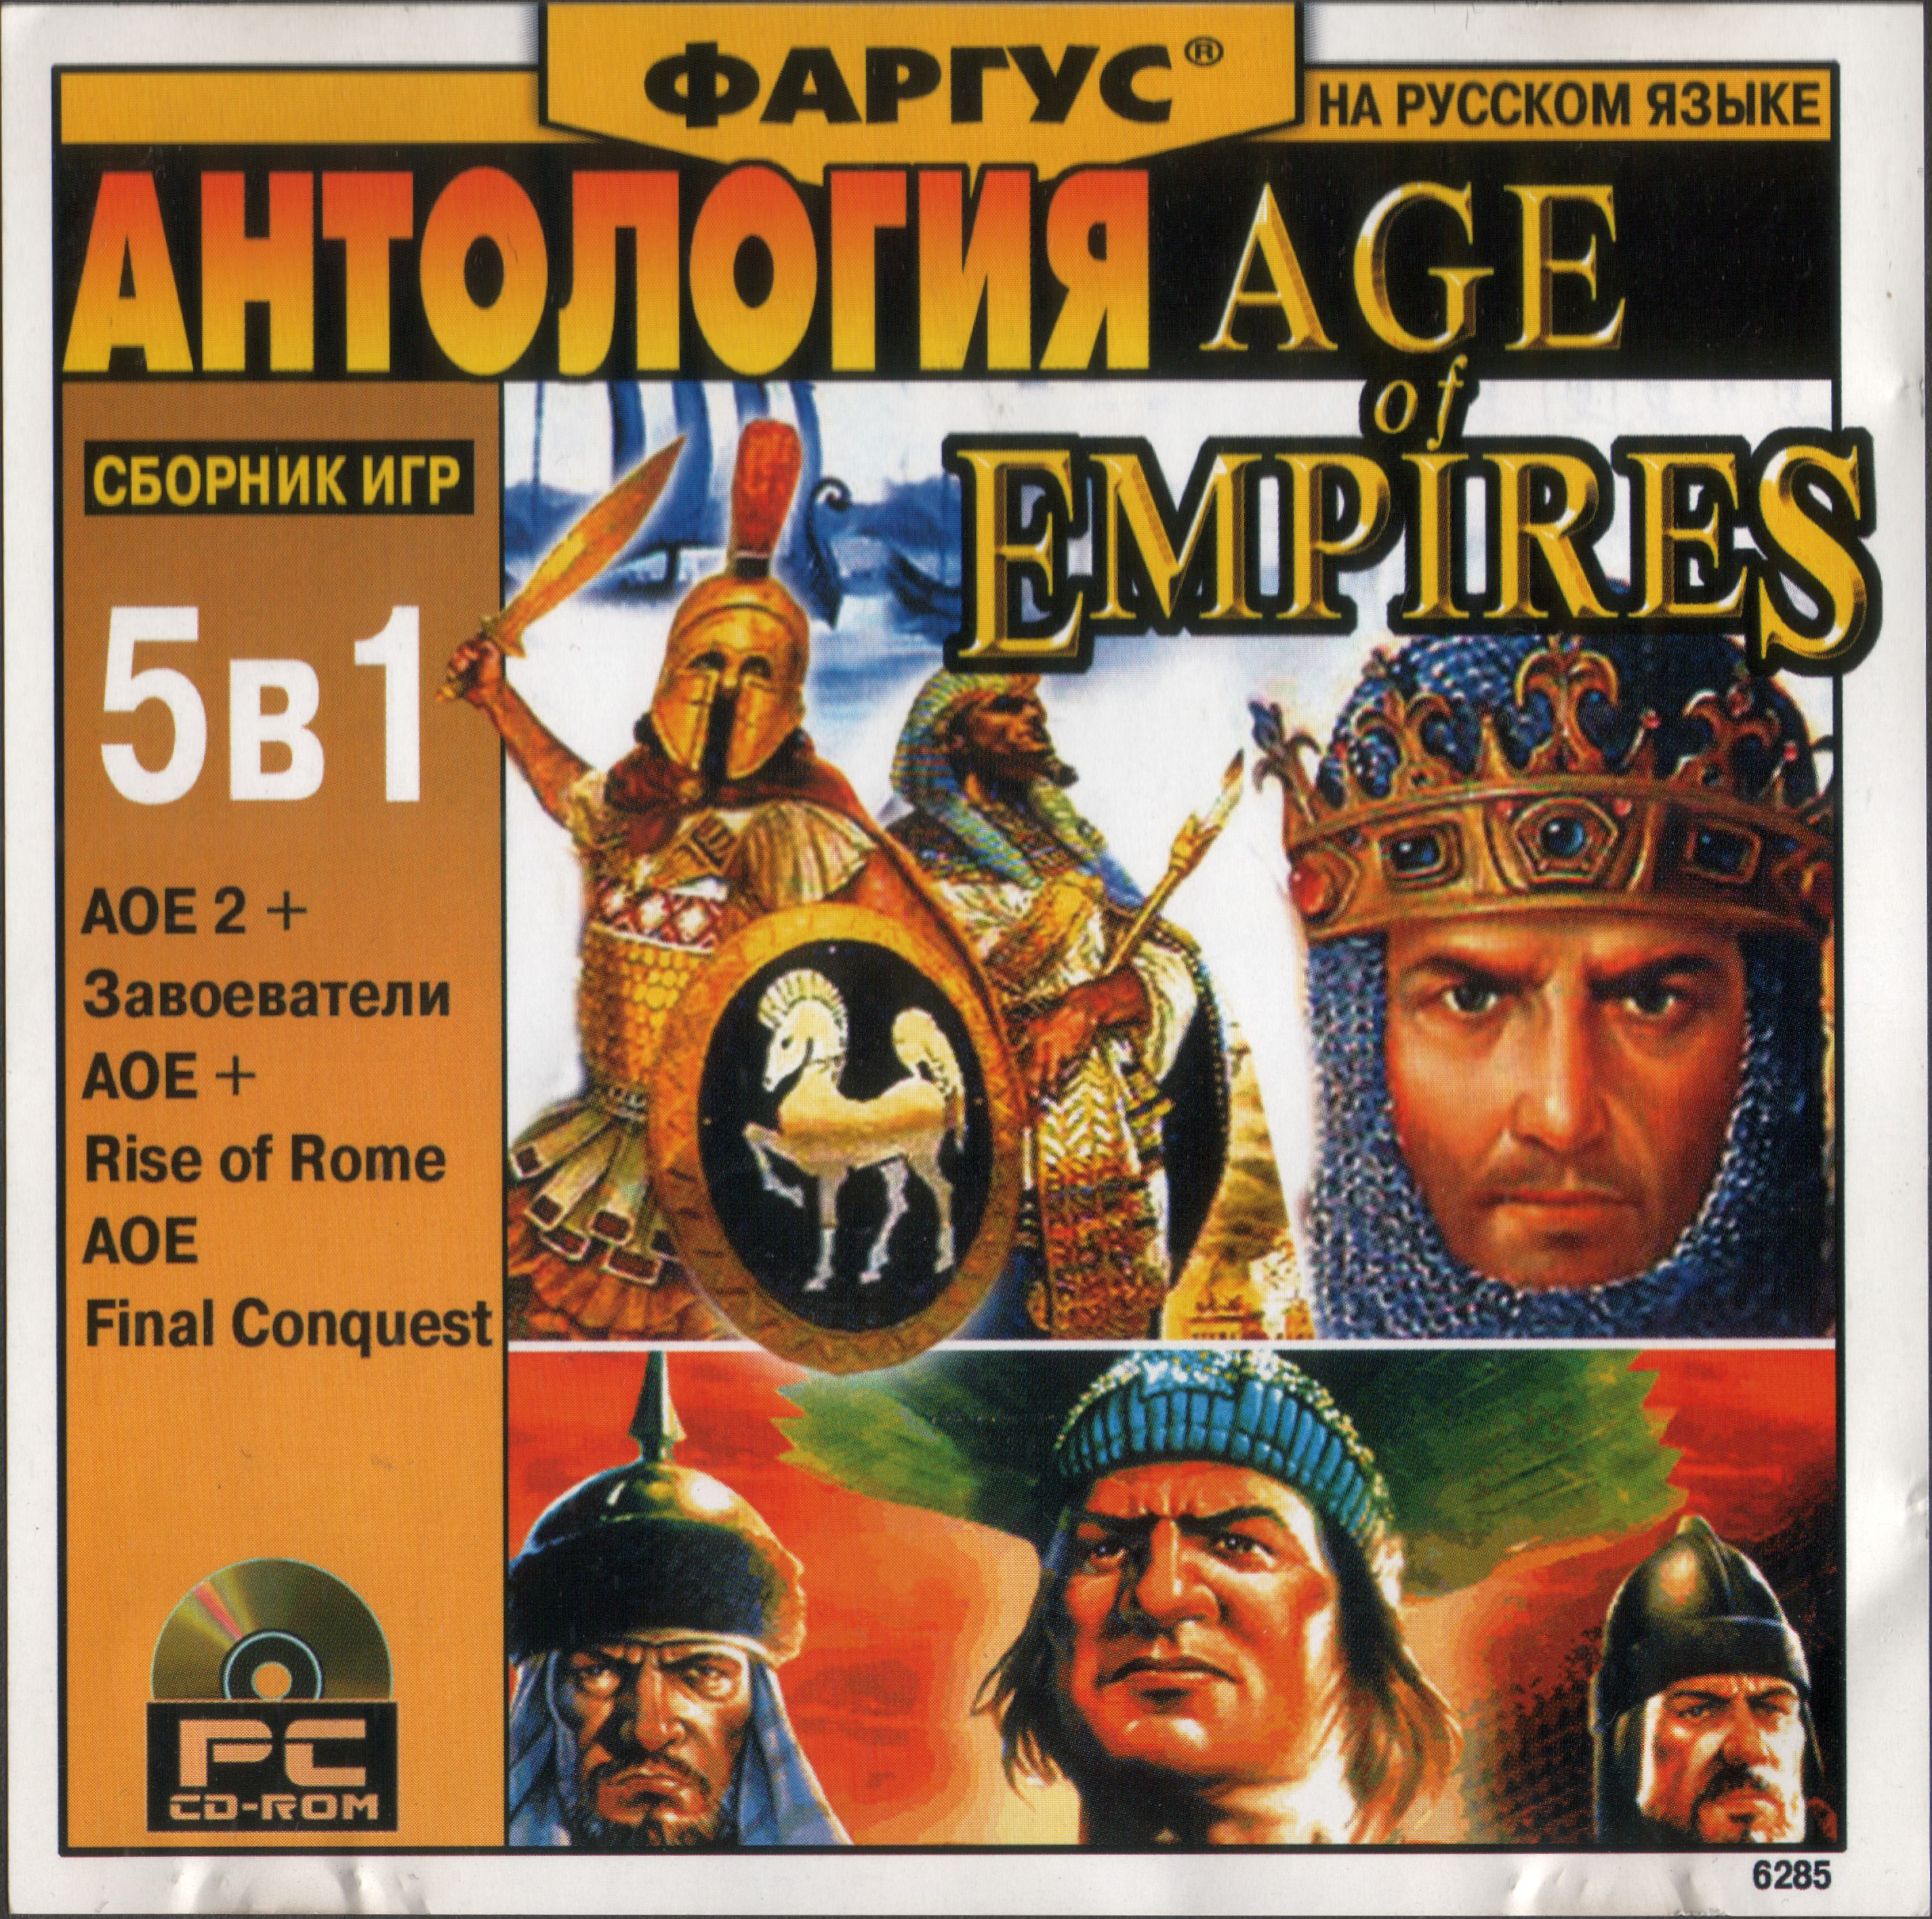 Сборник игр 2. Age of Empires Фаргус. Age of Empires 2 диск. Антология Фаргус. Сборник игр 2000.